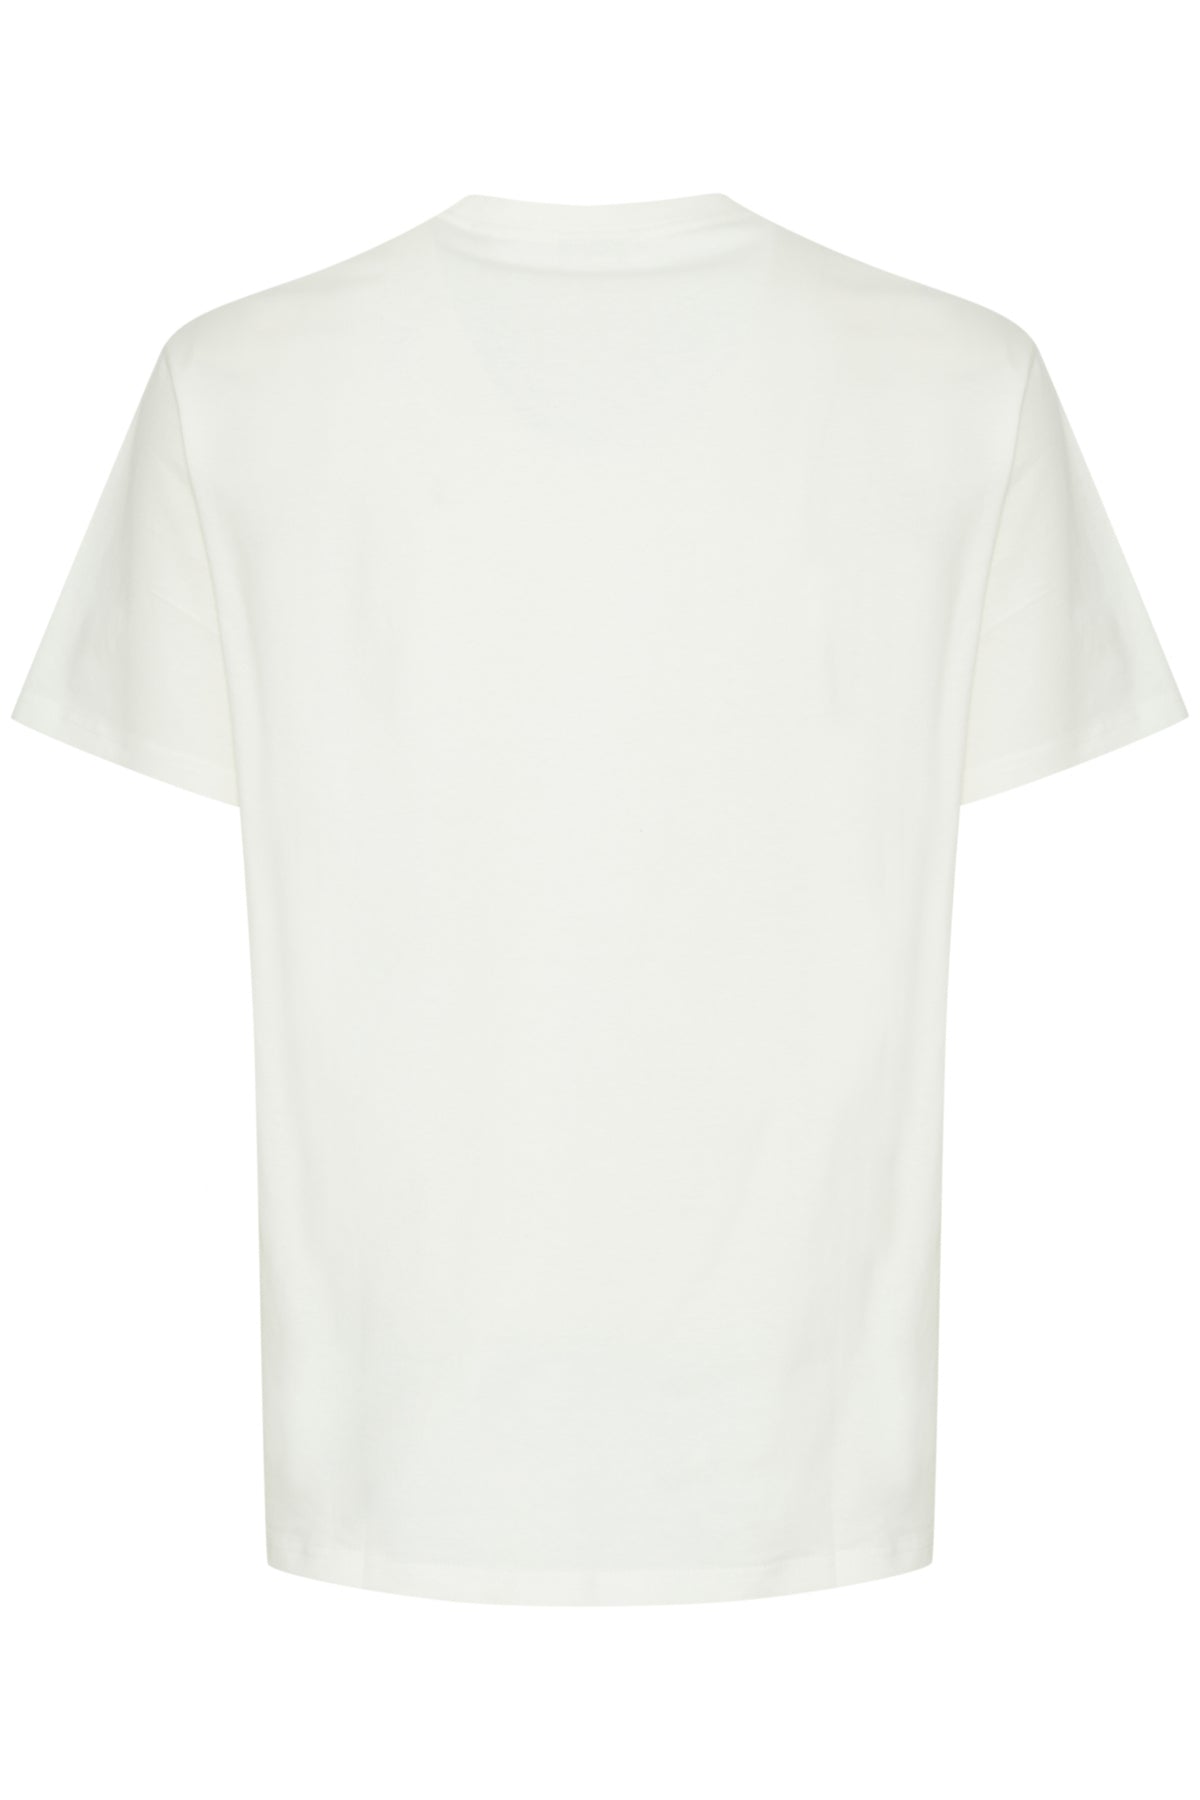 Camiseta !Solid Ishir Off White